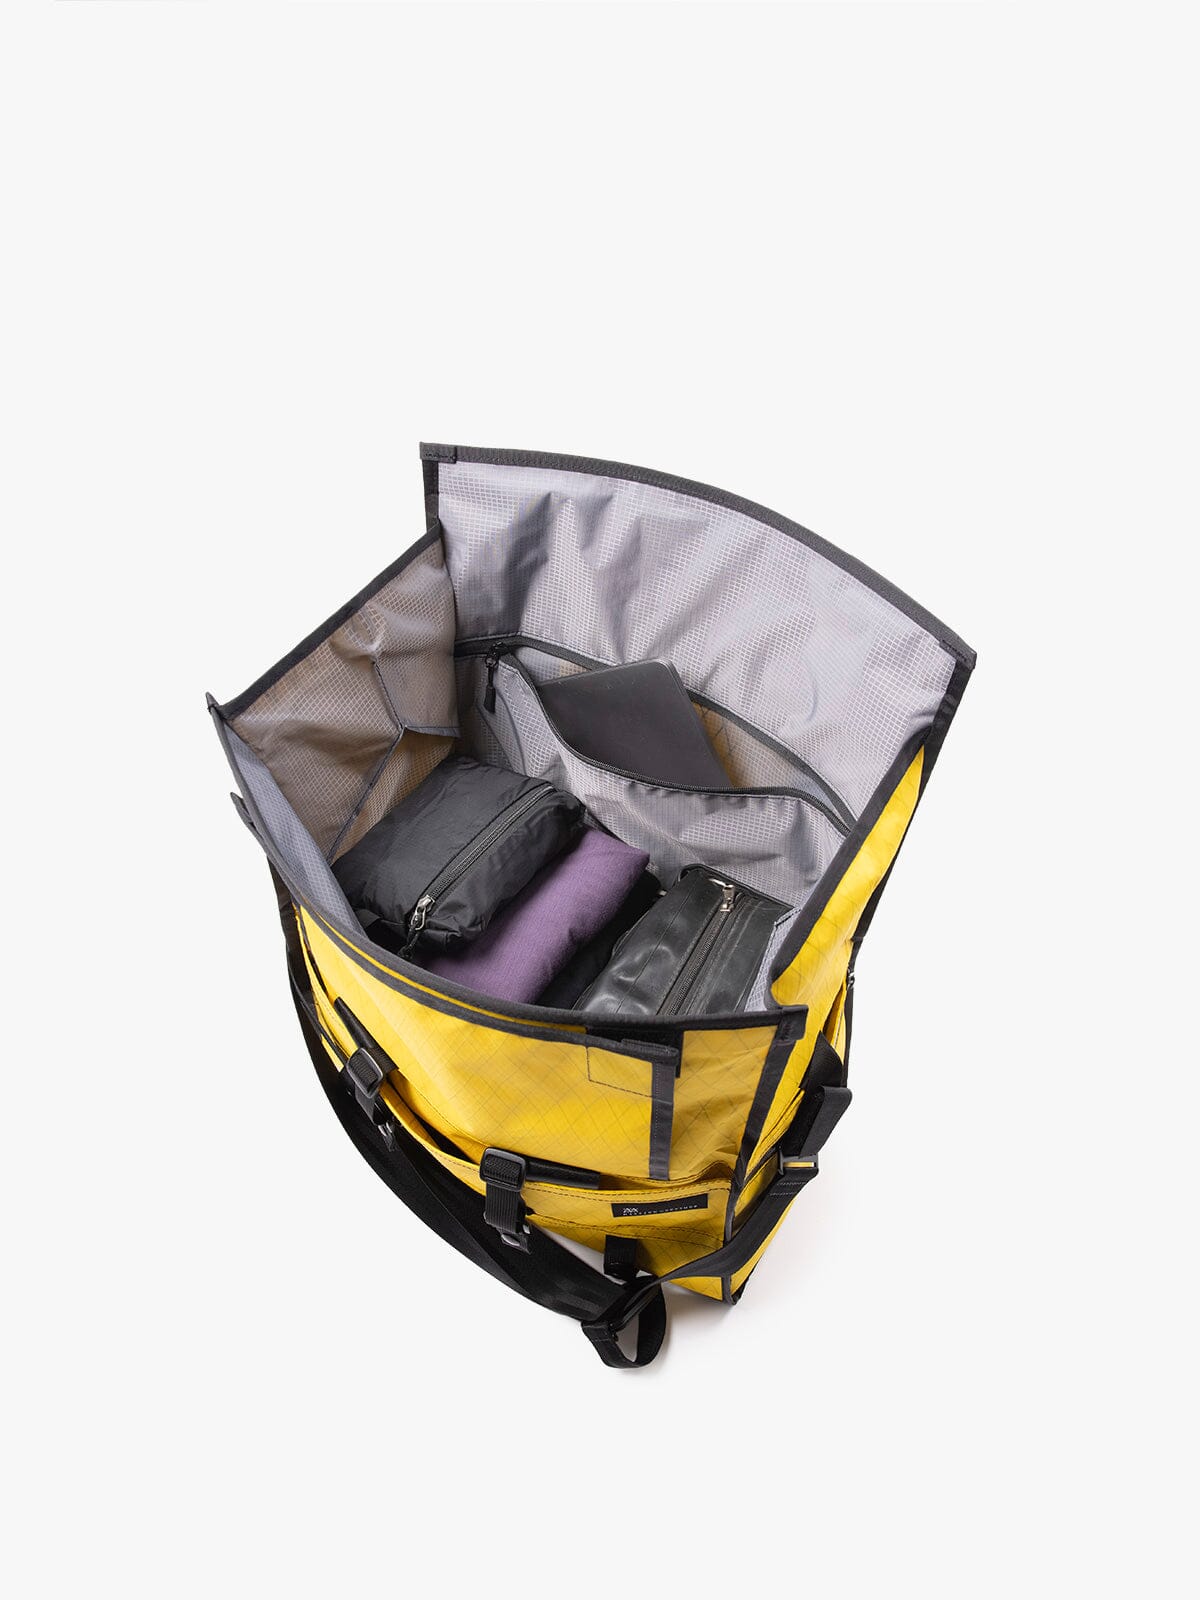 Helmsman : VX by Mission Workshop - Väskor och tekniska kläder för vädertätning - San Francisco och Los Angeles - Byggda för att tåla - Garanterade för alltid